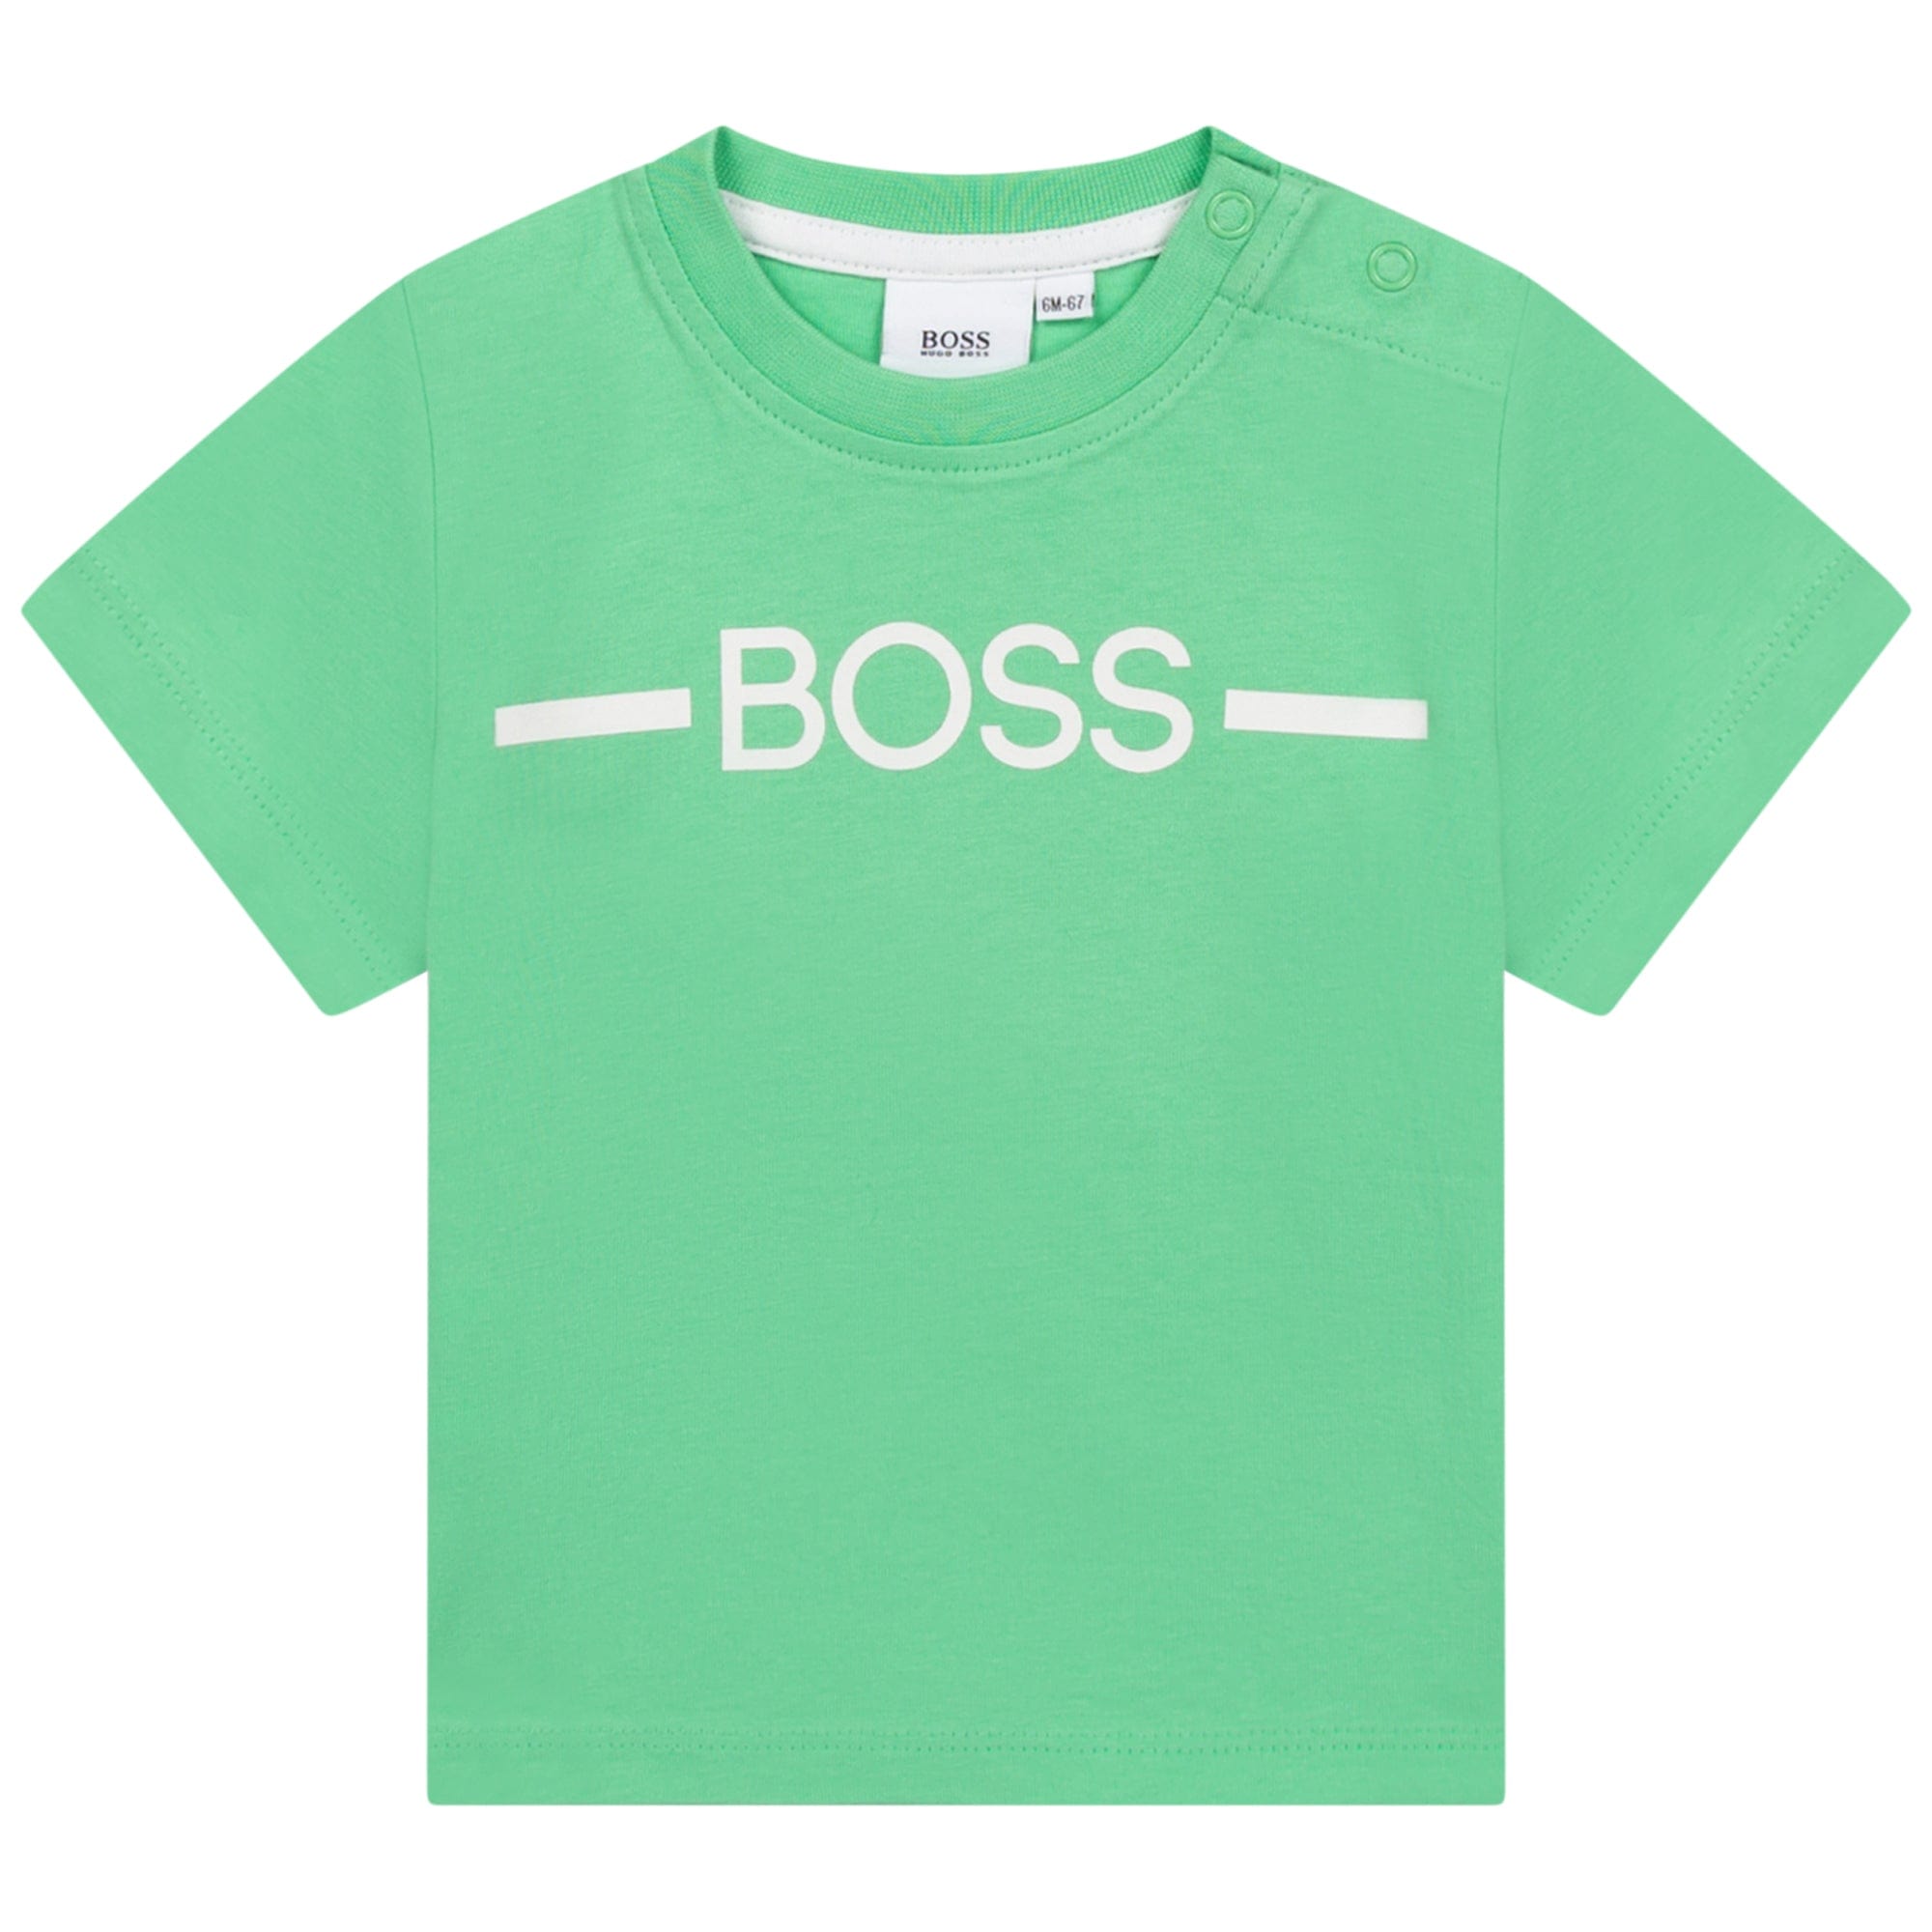 HUGO BOSS - Tee-Shirt - Green